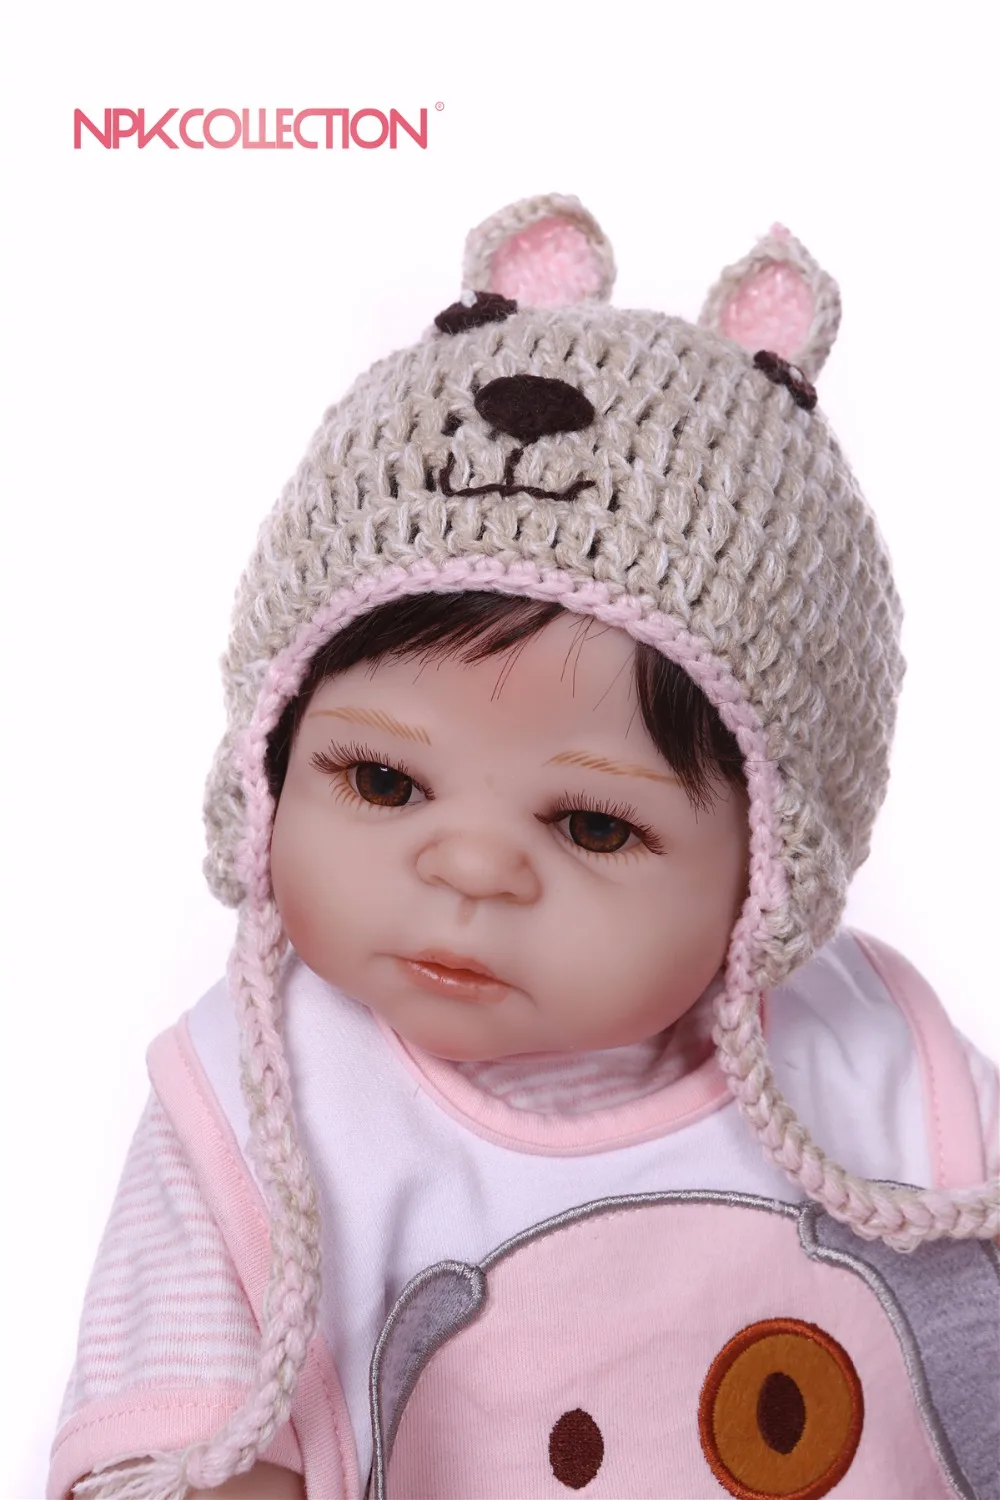 Npkколлекция 46 см, силиконовая кукла для новорожденной девочки, игрушки для новорожденных принцесс, куклы для купания, игрушки для игр, игрушки для дома, куклы